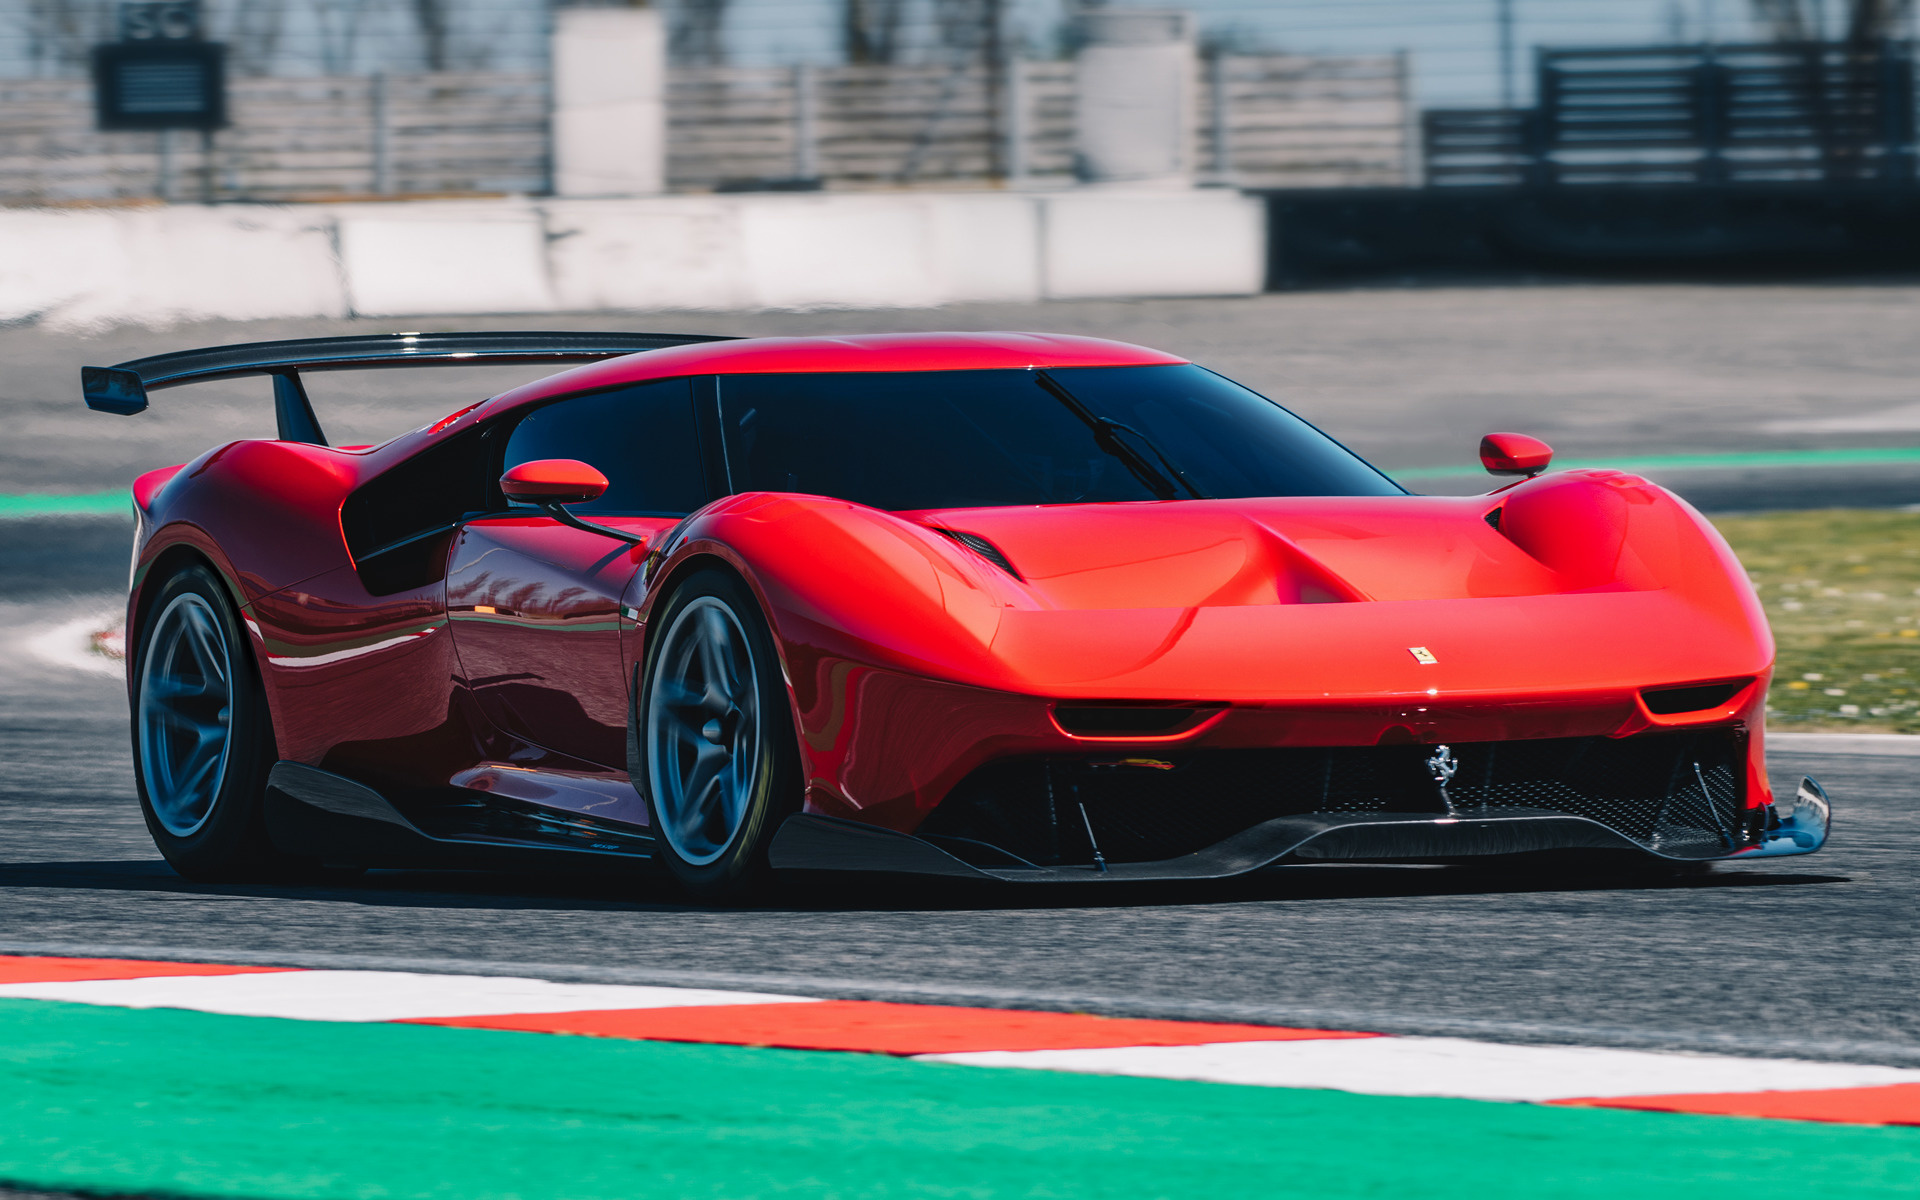 Ferrari 2019 , HD Wallpaper & Backgrounds